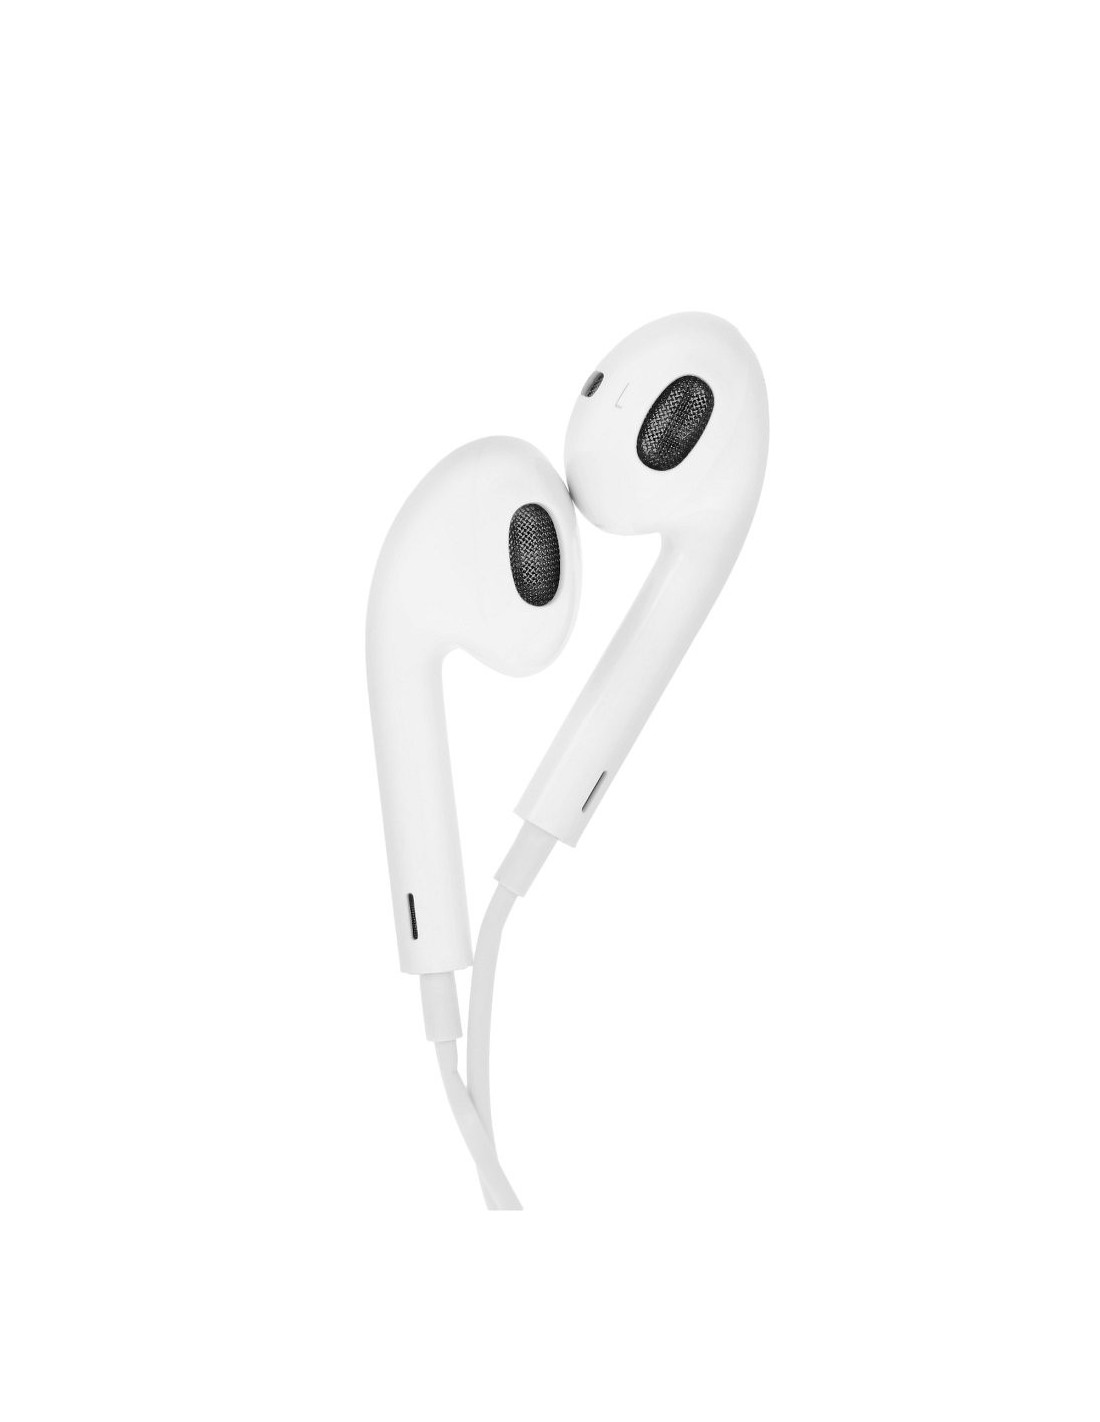 3.5mm Audio Jack iPhone Casque Écouteurs Écouteurs avec Boutons de Volume  et Microphone pour iPhone 5 5S SE 6 6S Plus 